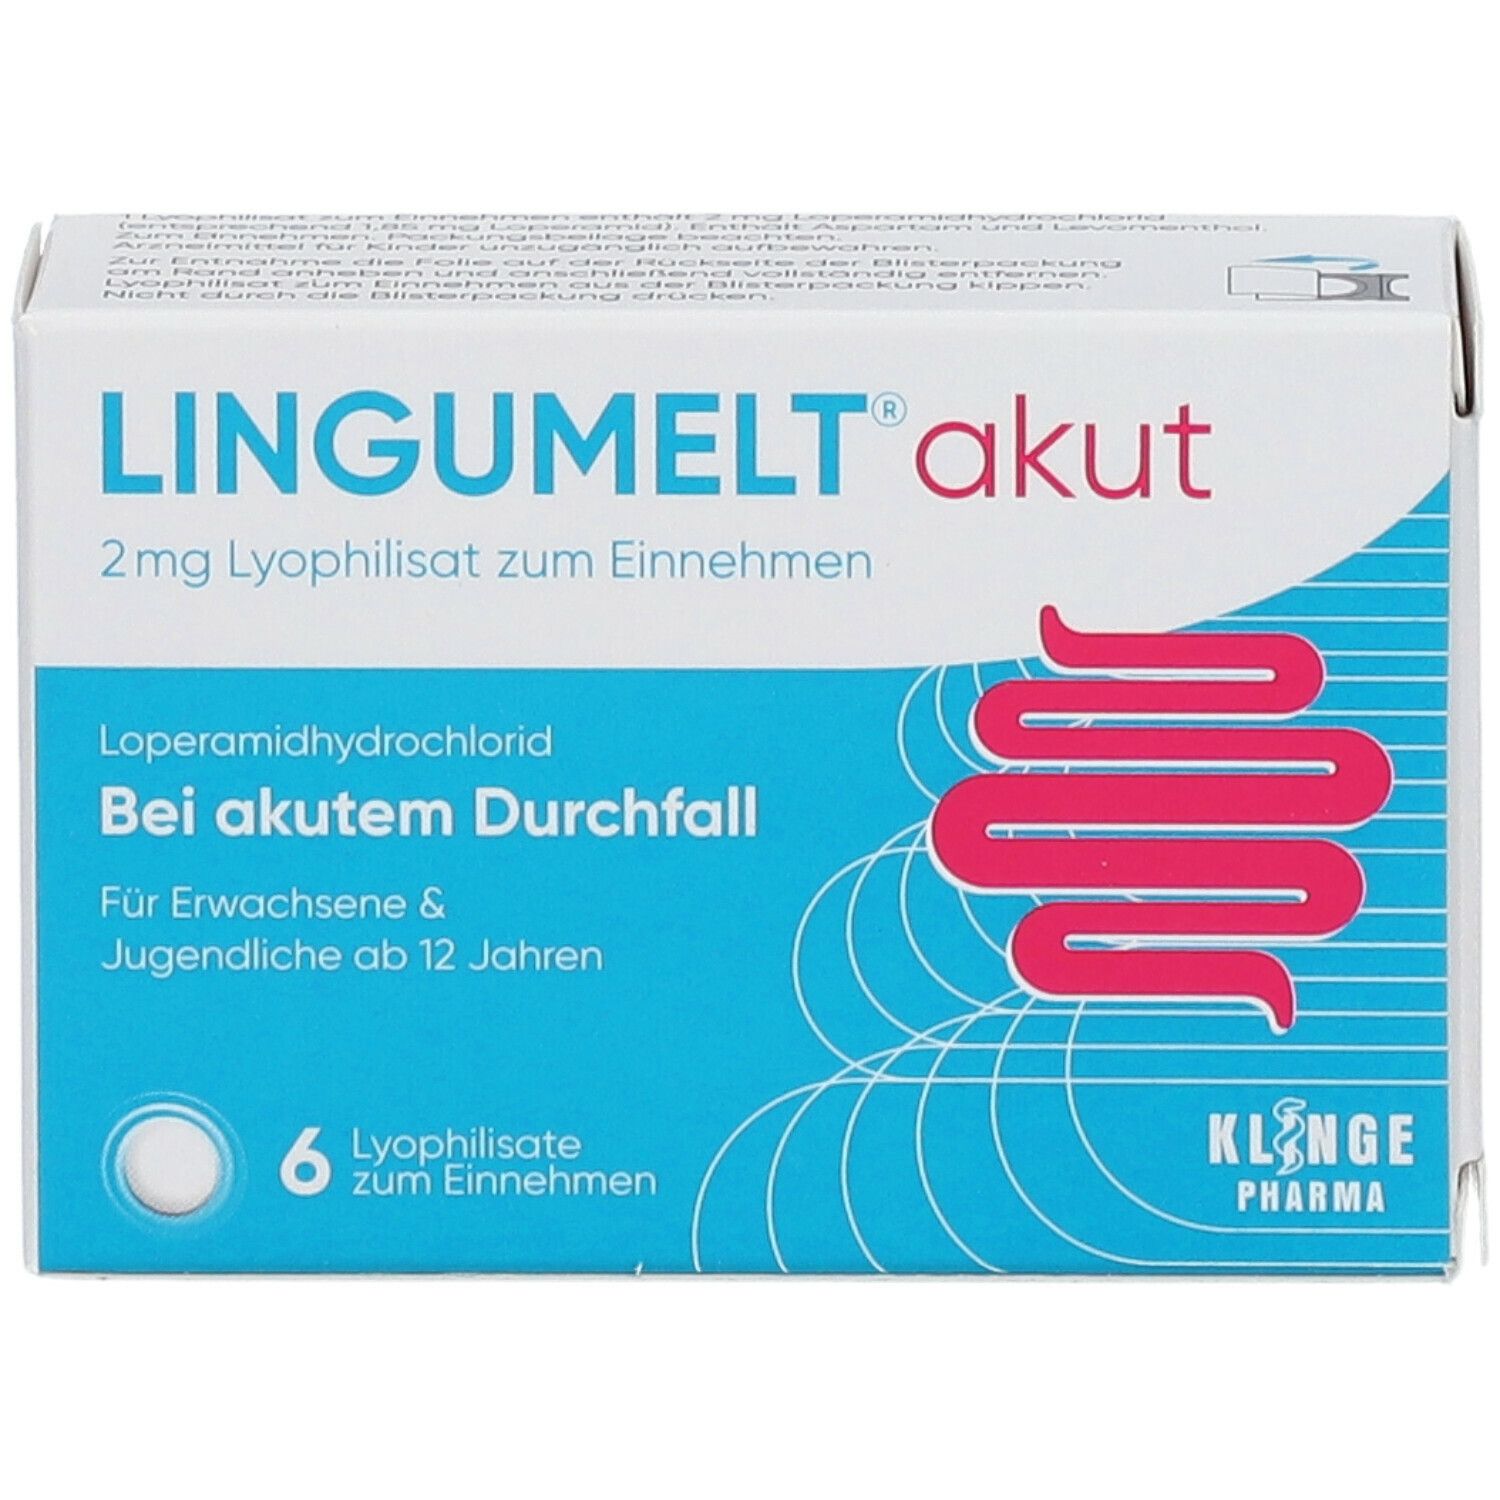 Lingumelt® akut 2 mg Lyophilisat zum Einnehmen